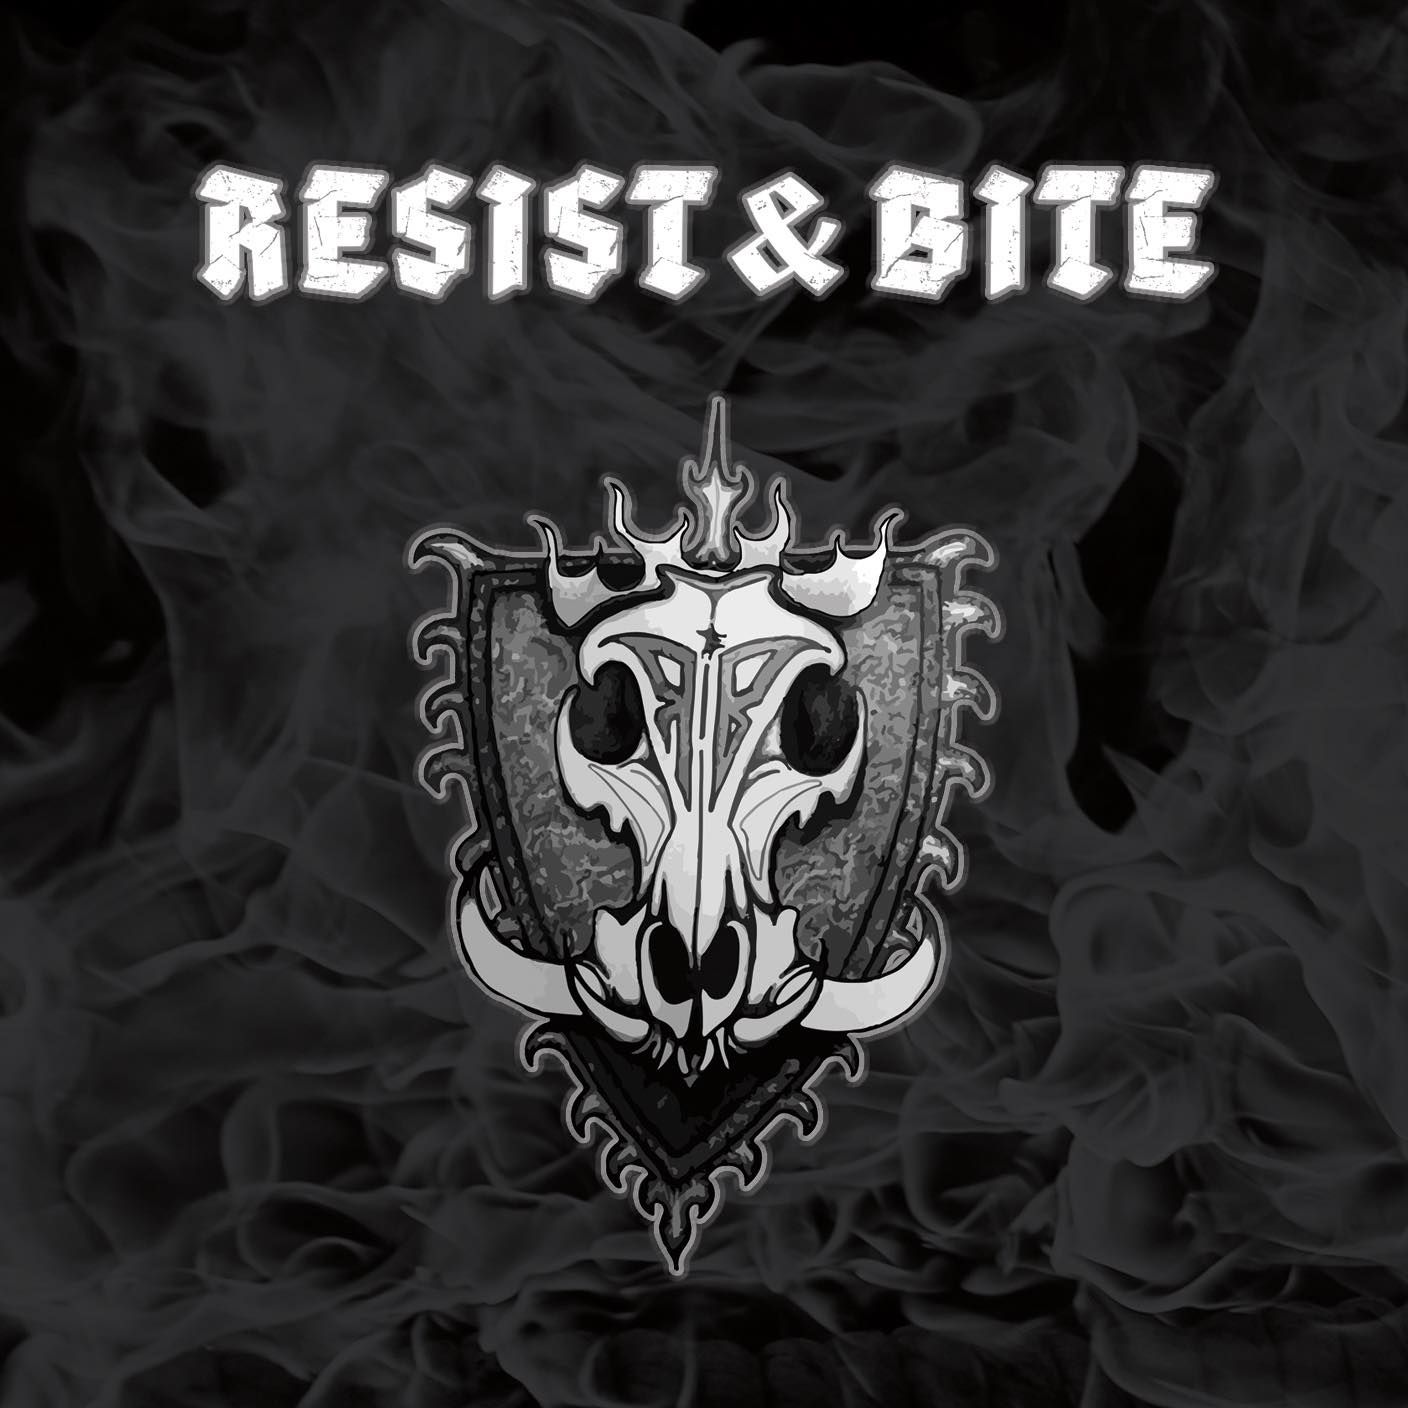 Ex-Gitarrist Tommy Skeoch zeigt 'I'-Video mit Resist & Bite